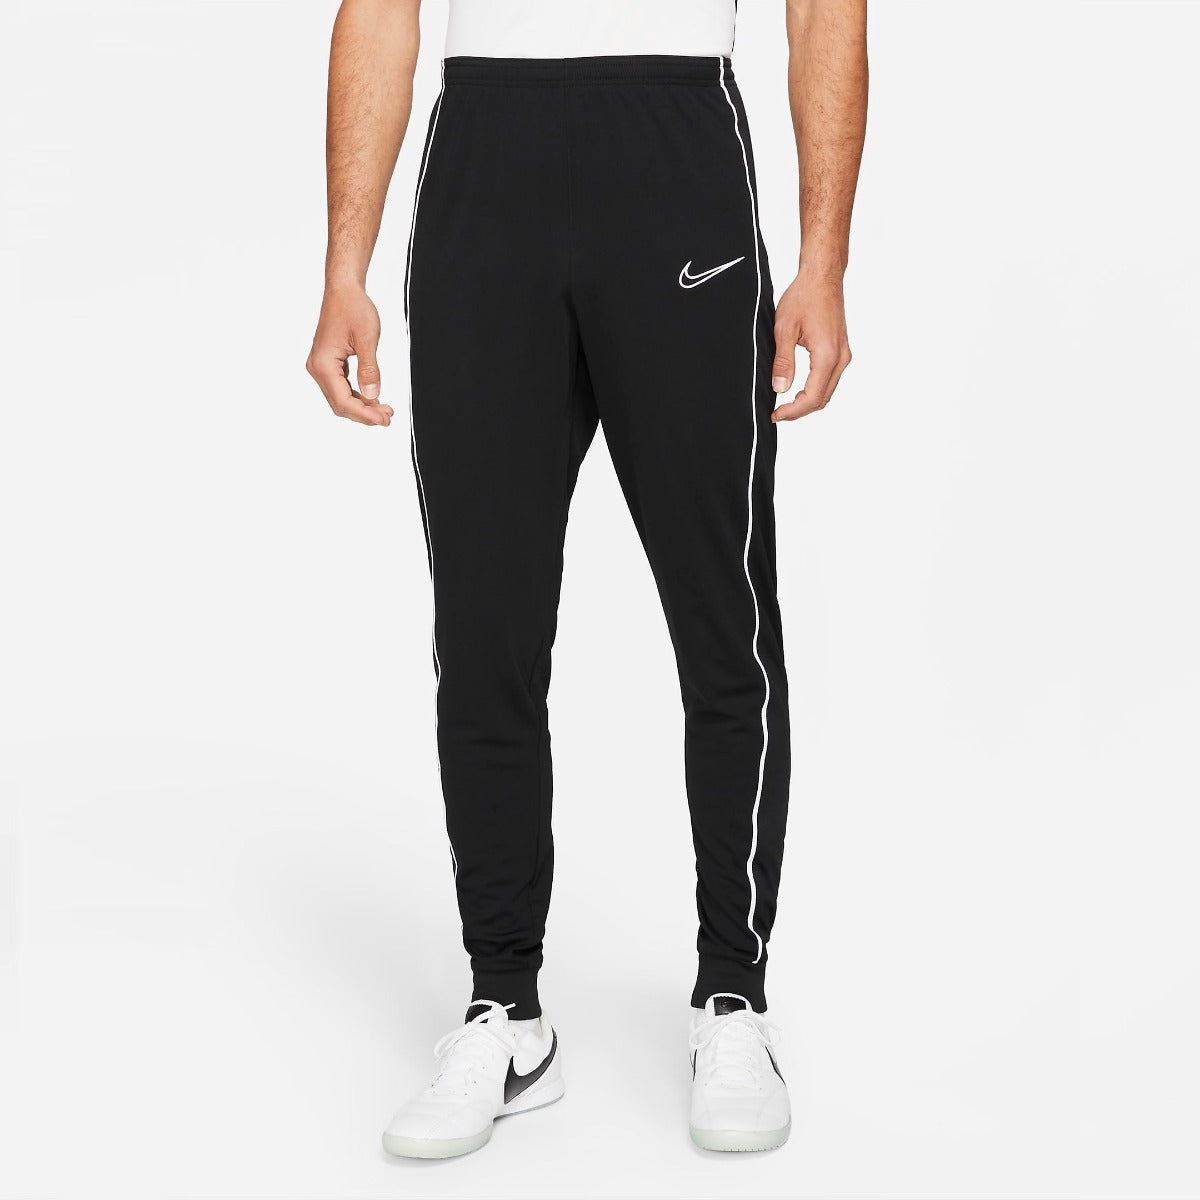 Nike track pants : r/Nike